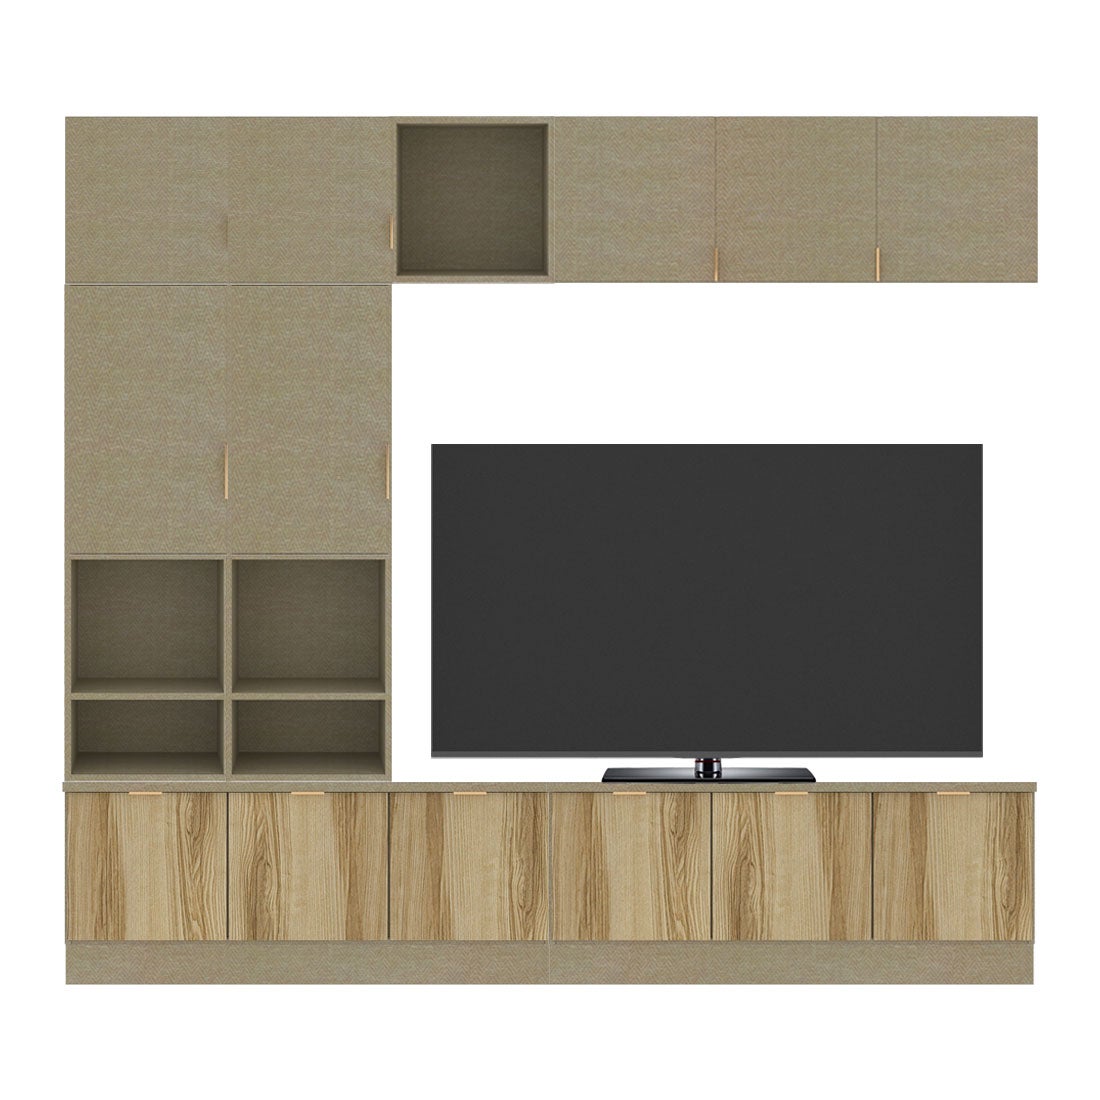 ชุดวางทีวีและตู้โชว์ ขนาด 240 ซม. รุ่น Contini Plus สีไม้อ่อน01